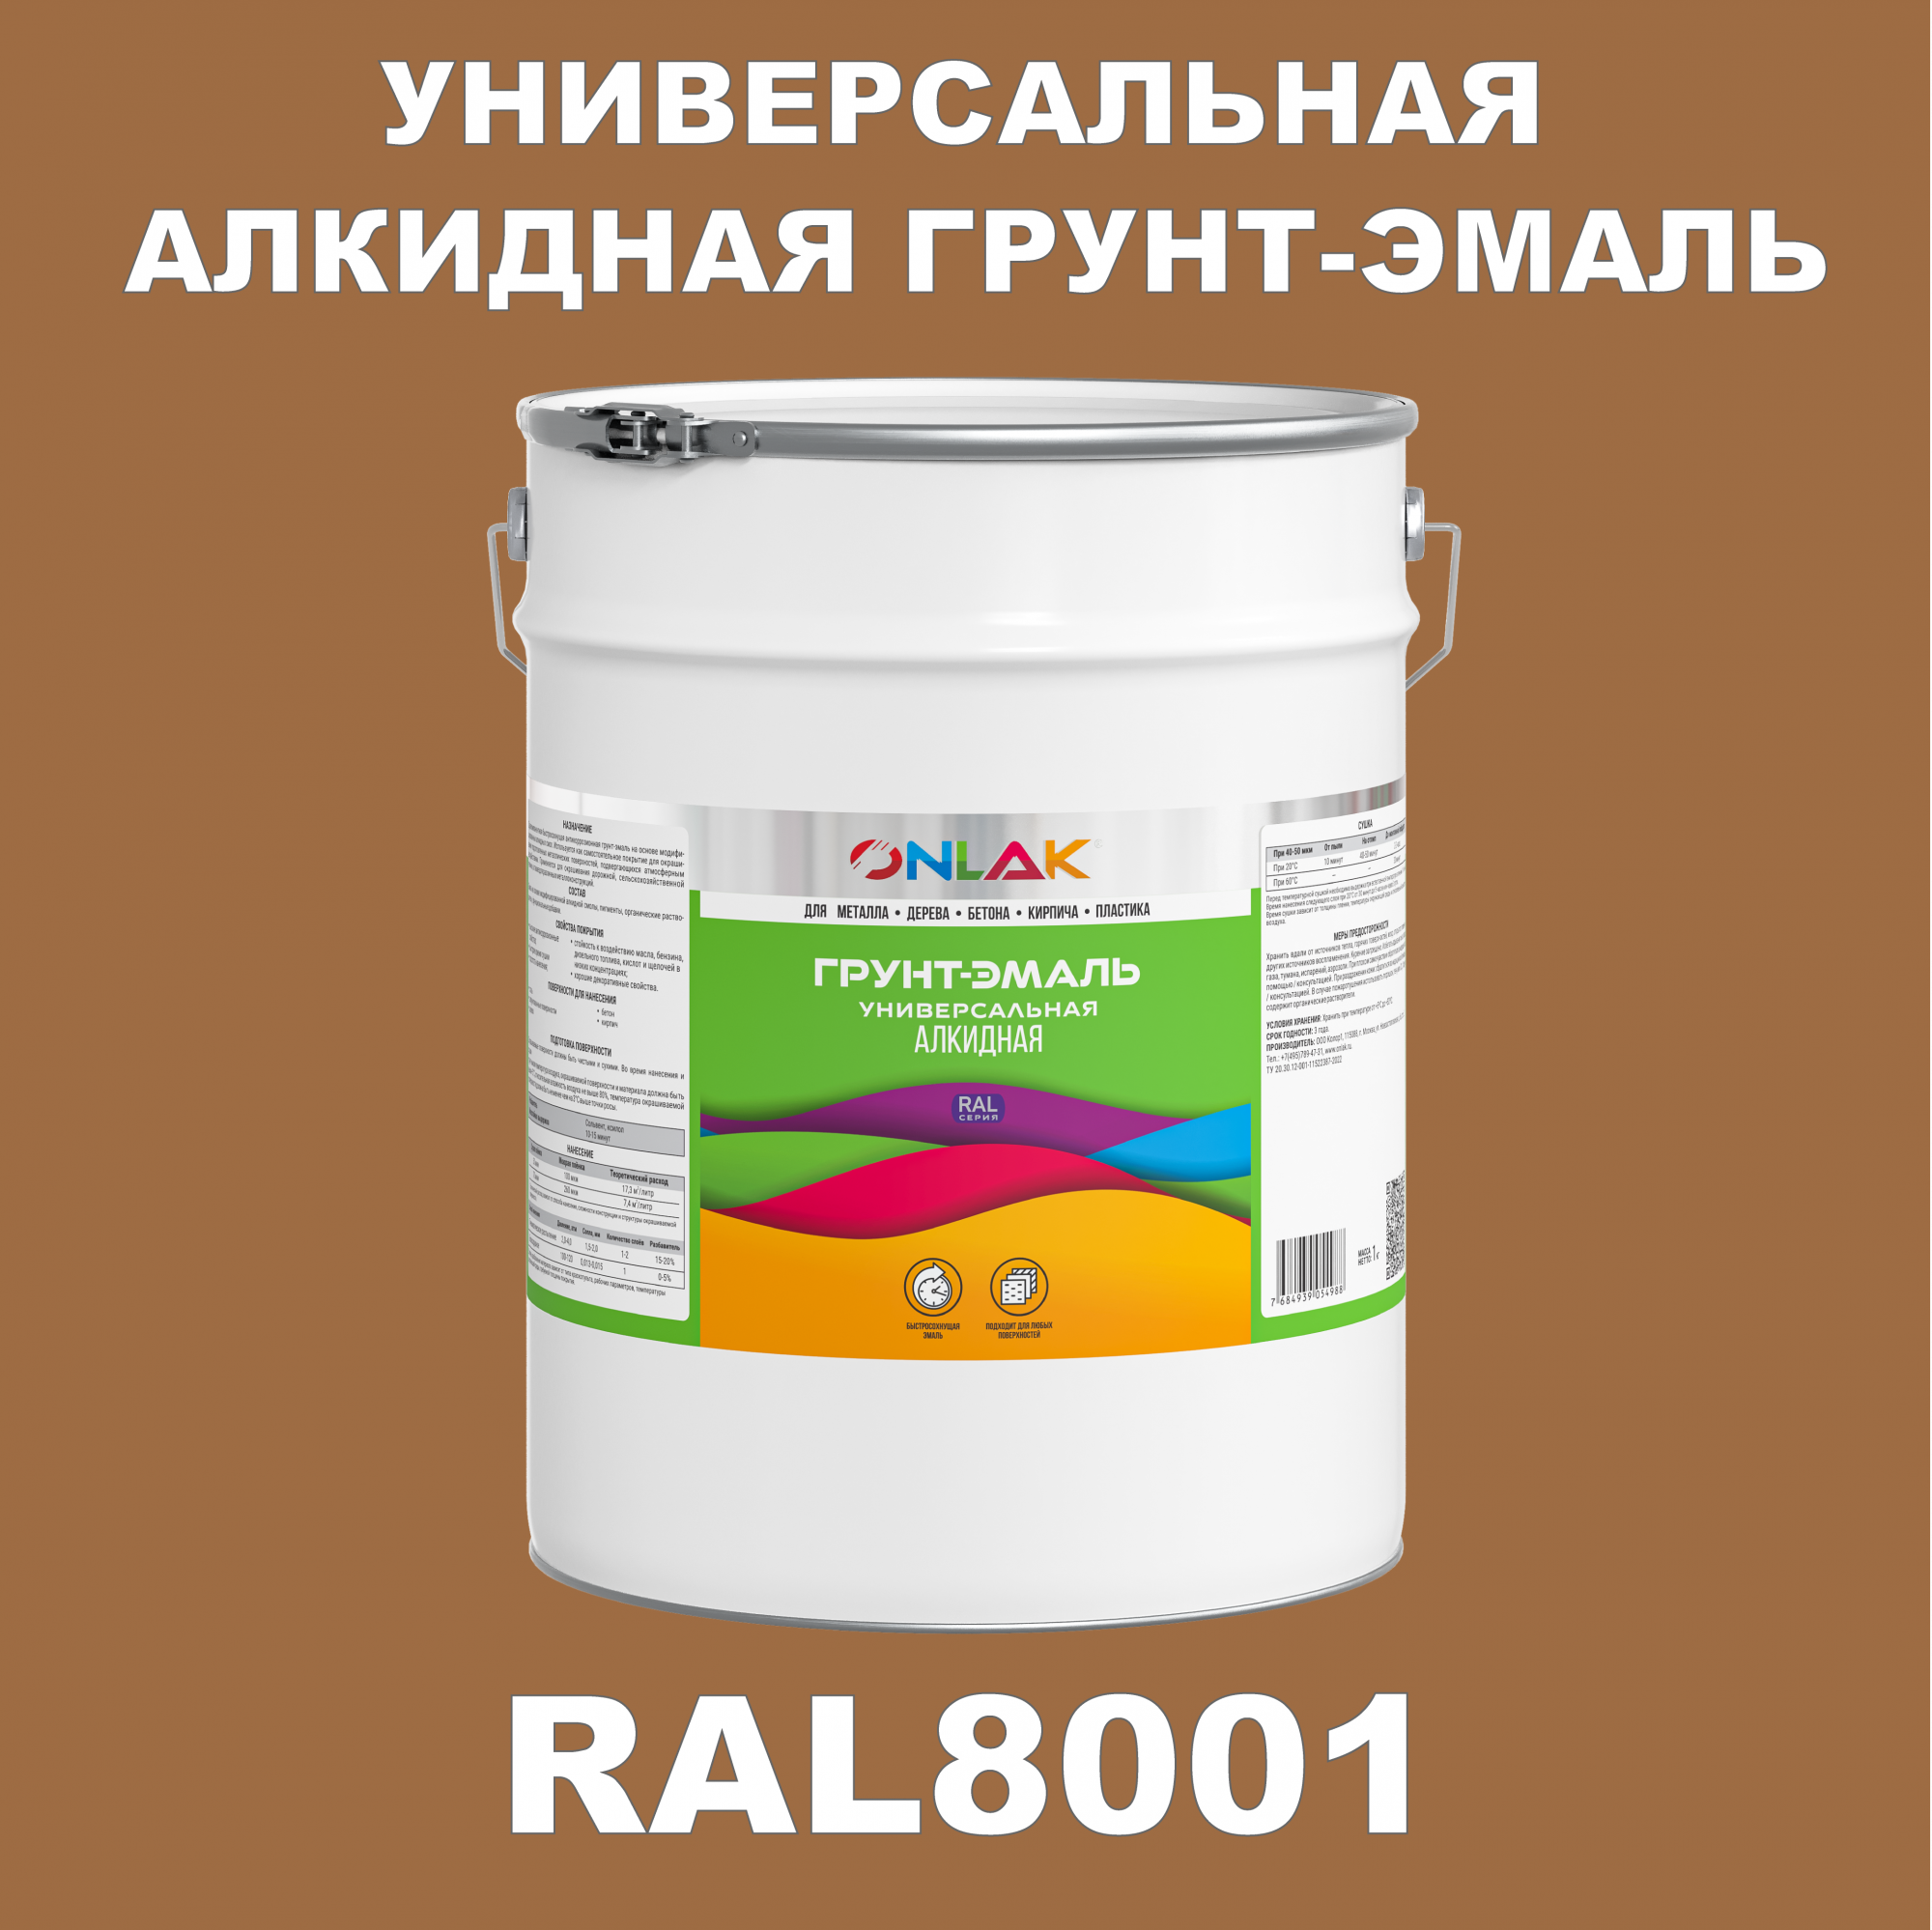 Грунт-эмаль ONLAK 1К RAL8001 антикоррозионная алкидная по металлу по ржавчине 20 кг грунт эмаль neomid по ржавчине быстросохнущая алкидная серая 0 9 кг